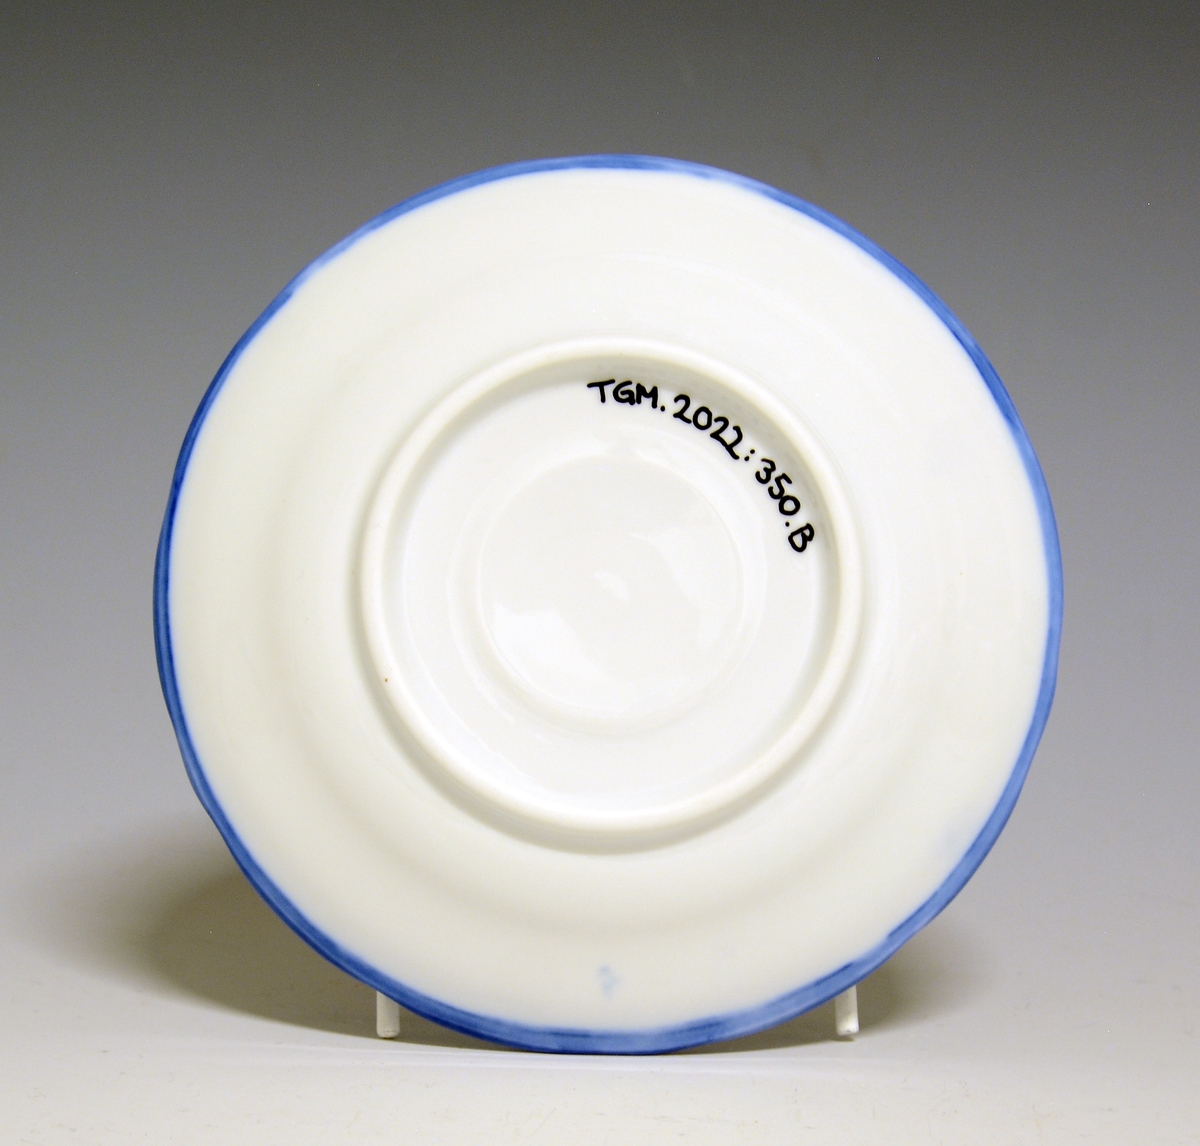 Kaffeskål av porselen. Hvit glasur. Håndmalt blå underglasurdekor på fanen, blå kantstrek ytterst.
Modell: Victoria, 1800
Uten fabrikkmerke.